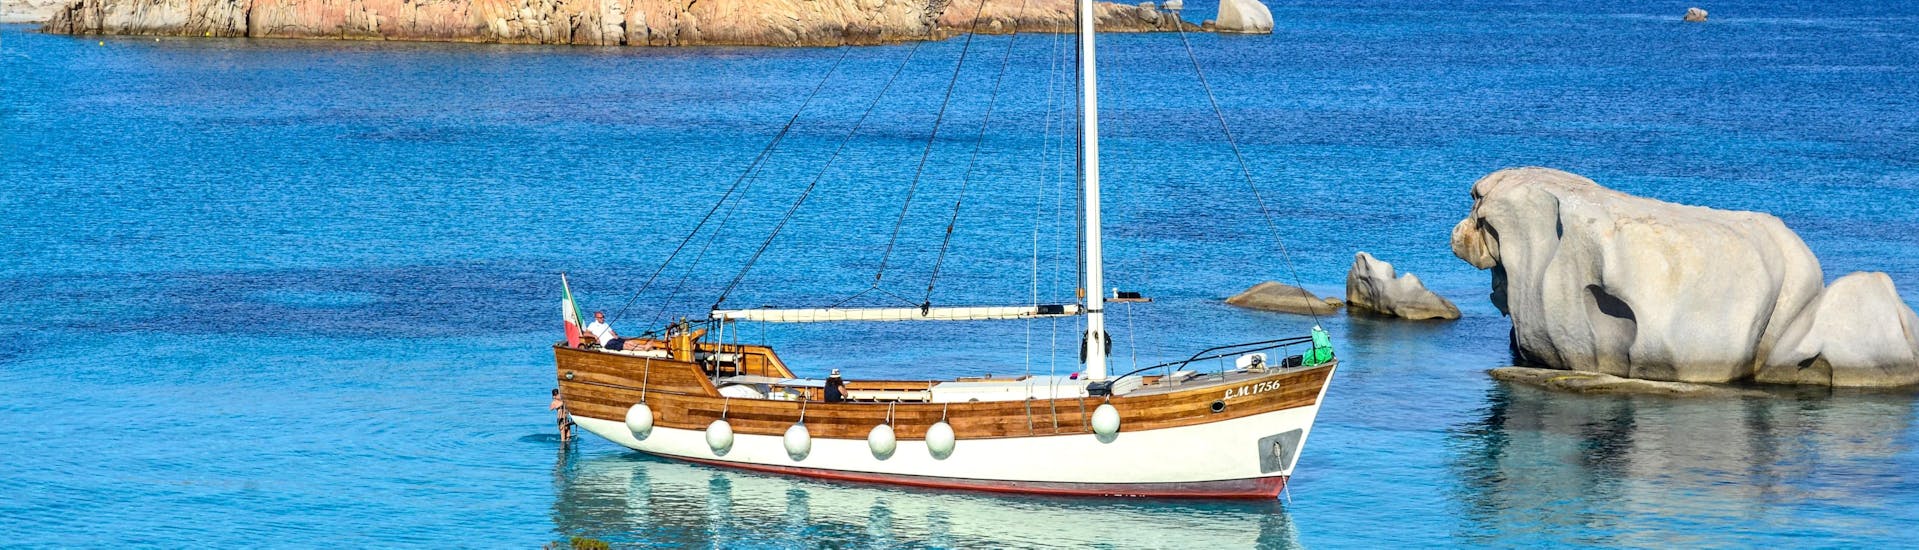 Le voilier de Maggior Leggero Tour est ancré dans la baie pendant la balade en bateau à voile dans l'archipel de La Maddalena.